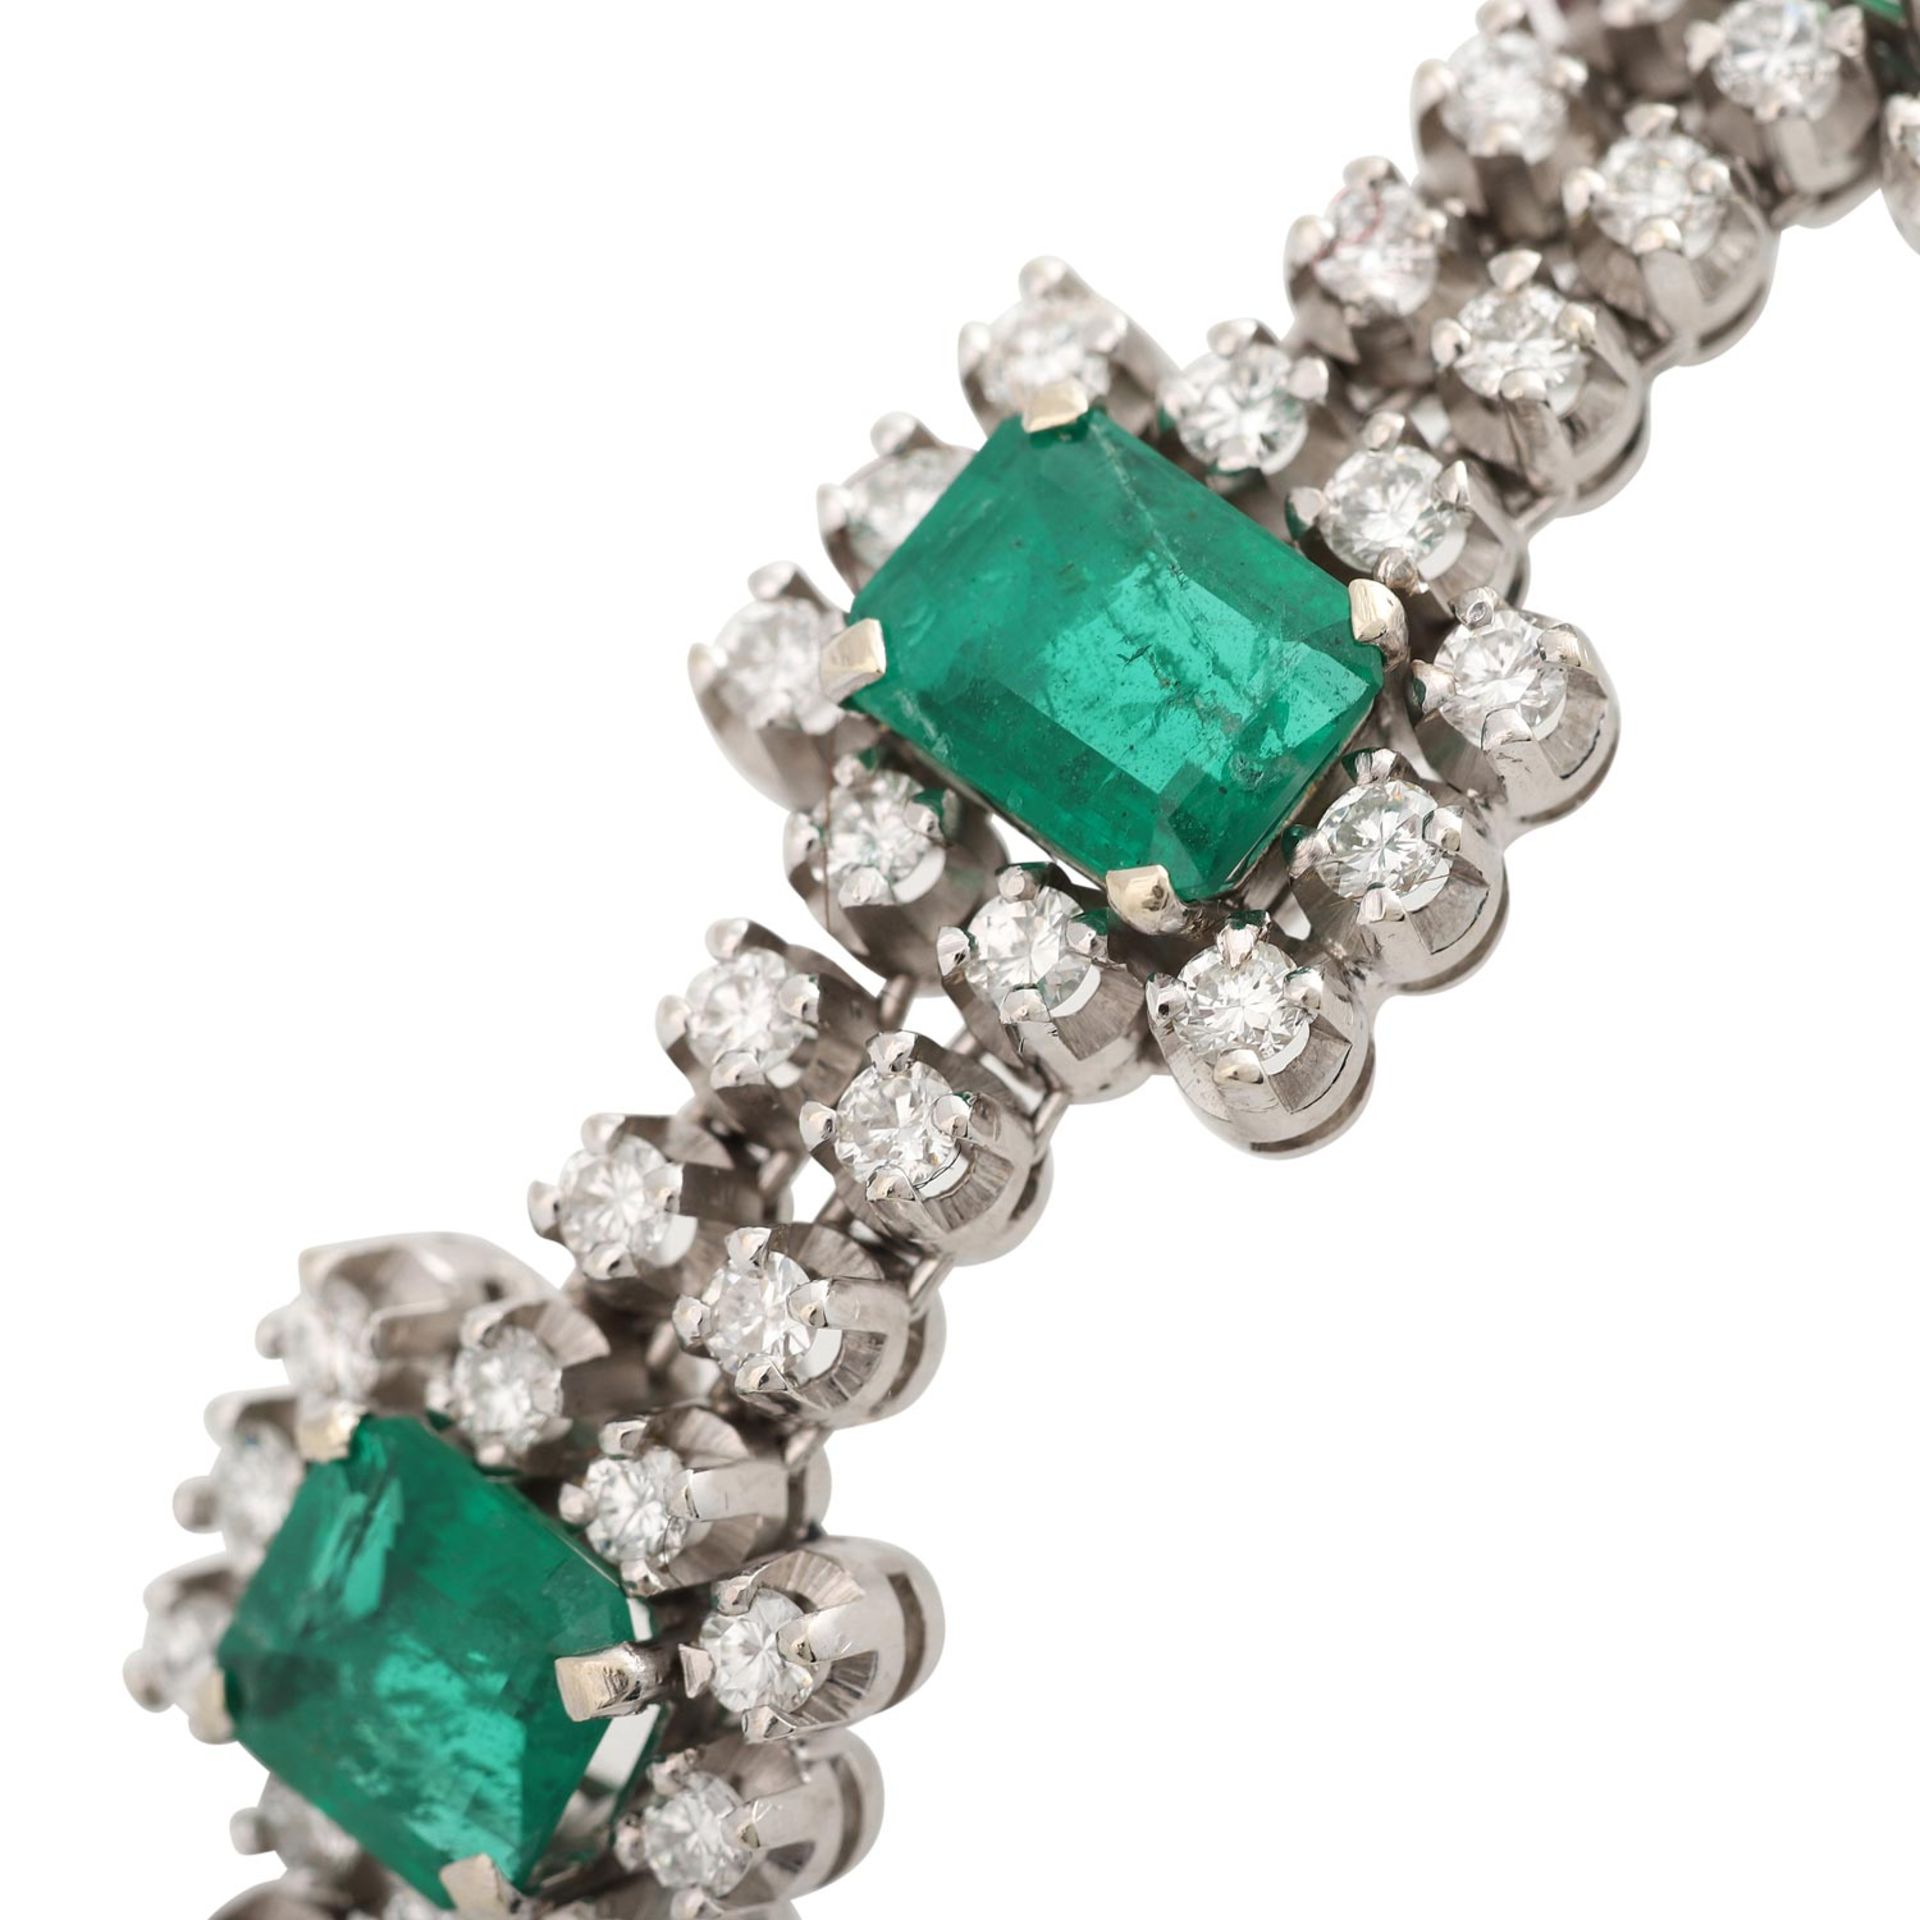 Smaragdarmband mit Brillanten von ca. 3 ctvon mittlerer bis guter Farbe und Reinheit, 7 Smaragde von - Bild 5 aus 5